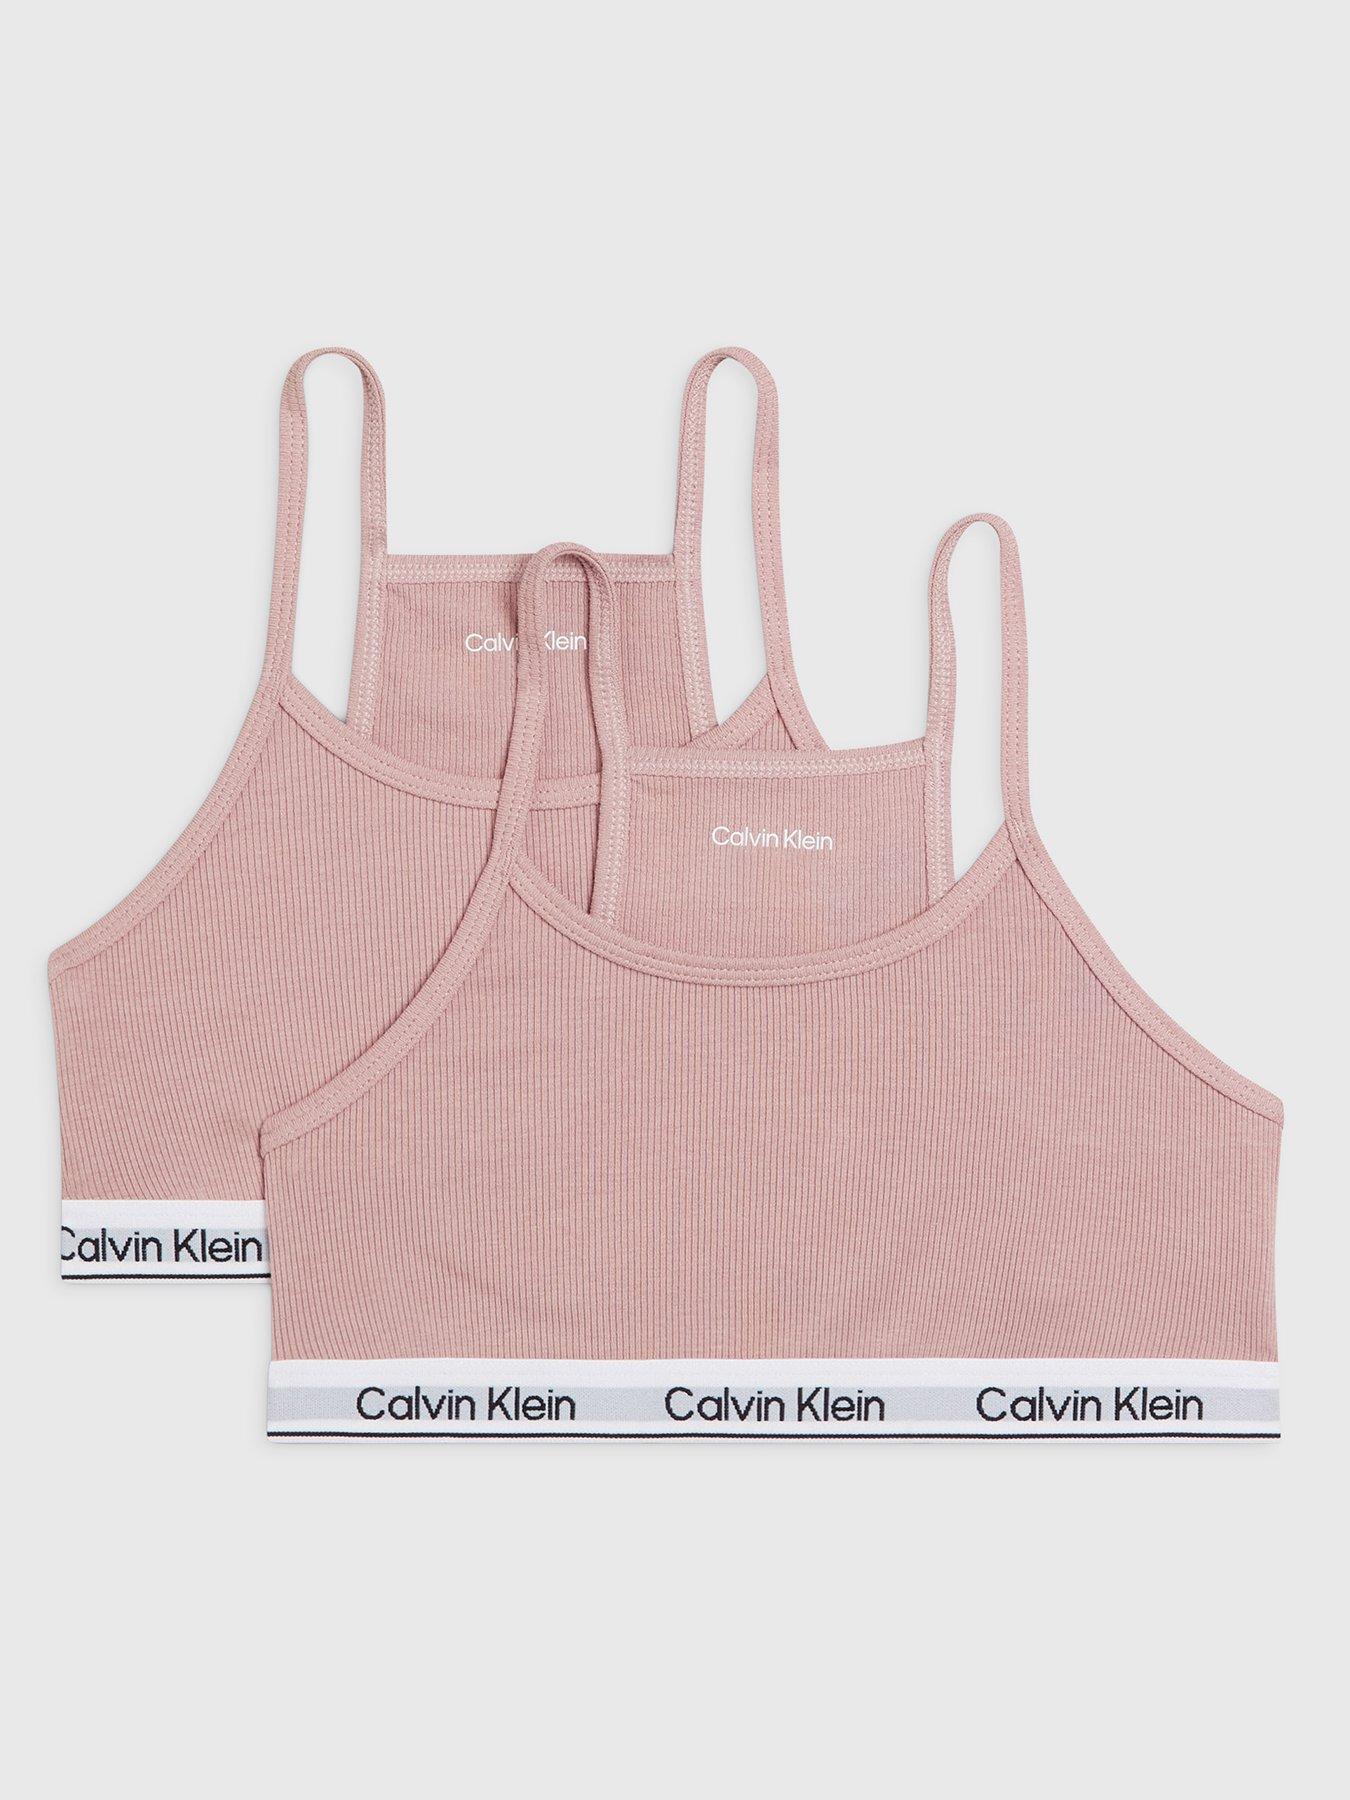 Calvin Klein Girls White Cotton Bra Tops (2 Pack)